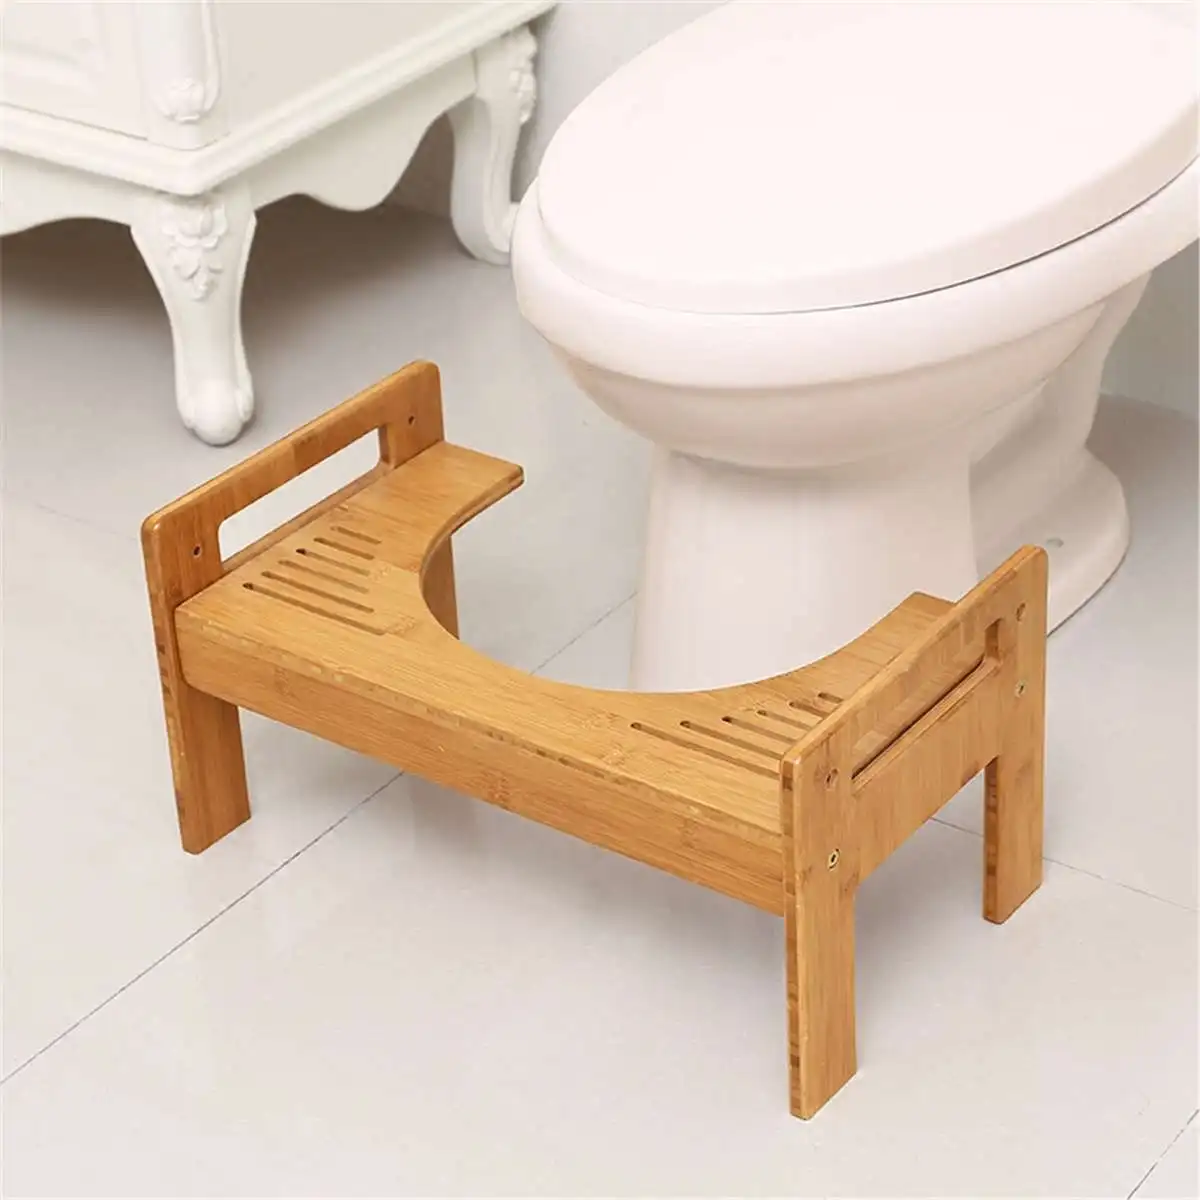 46x27x25 см бамбук деревянный цвет утолщаются стабильный Туалет ног стул Нескользящие сидеть и приседать горшок ванная комната эко здоровый